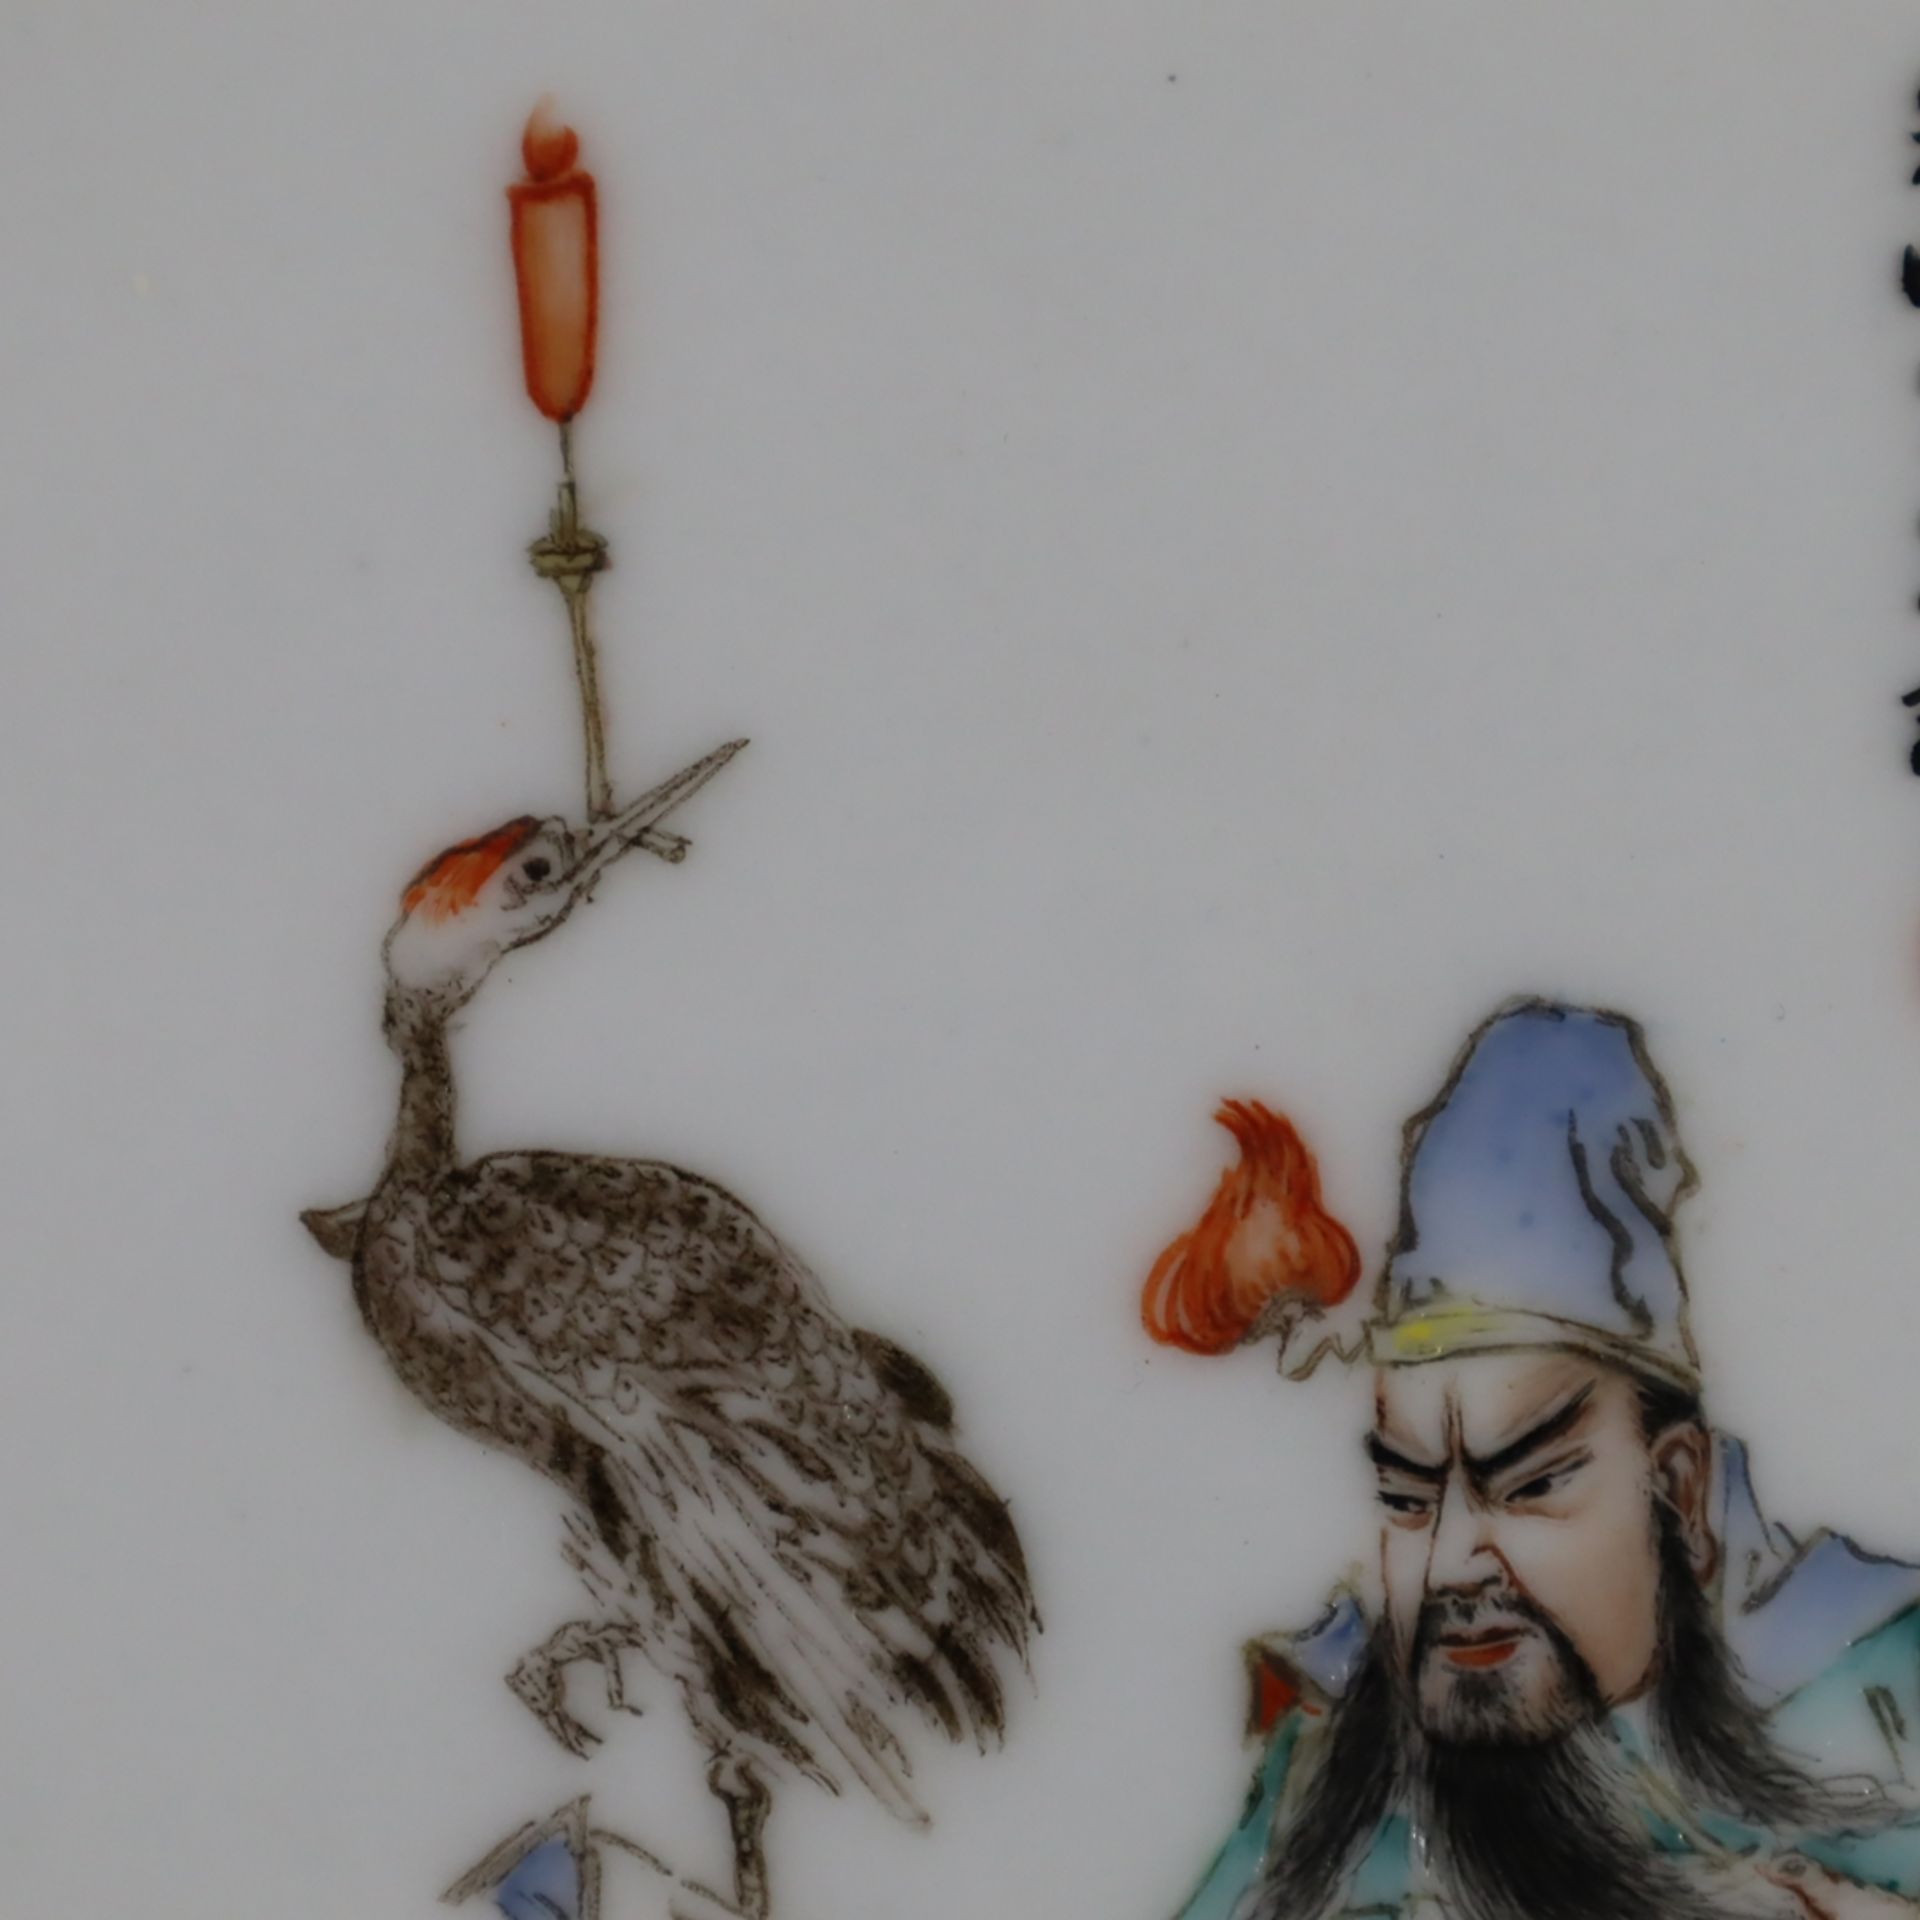 Famille rose-Porzellanbild - China 20.Jh., in polychromen Emailfarben gemalte Figur des Generals Gu - Image 4 of 6